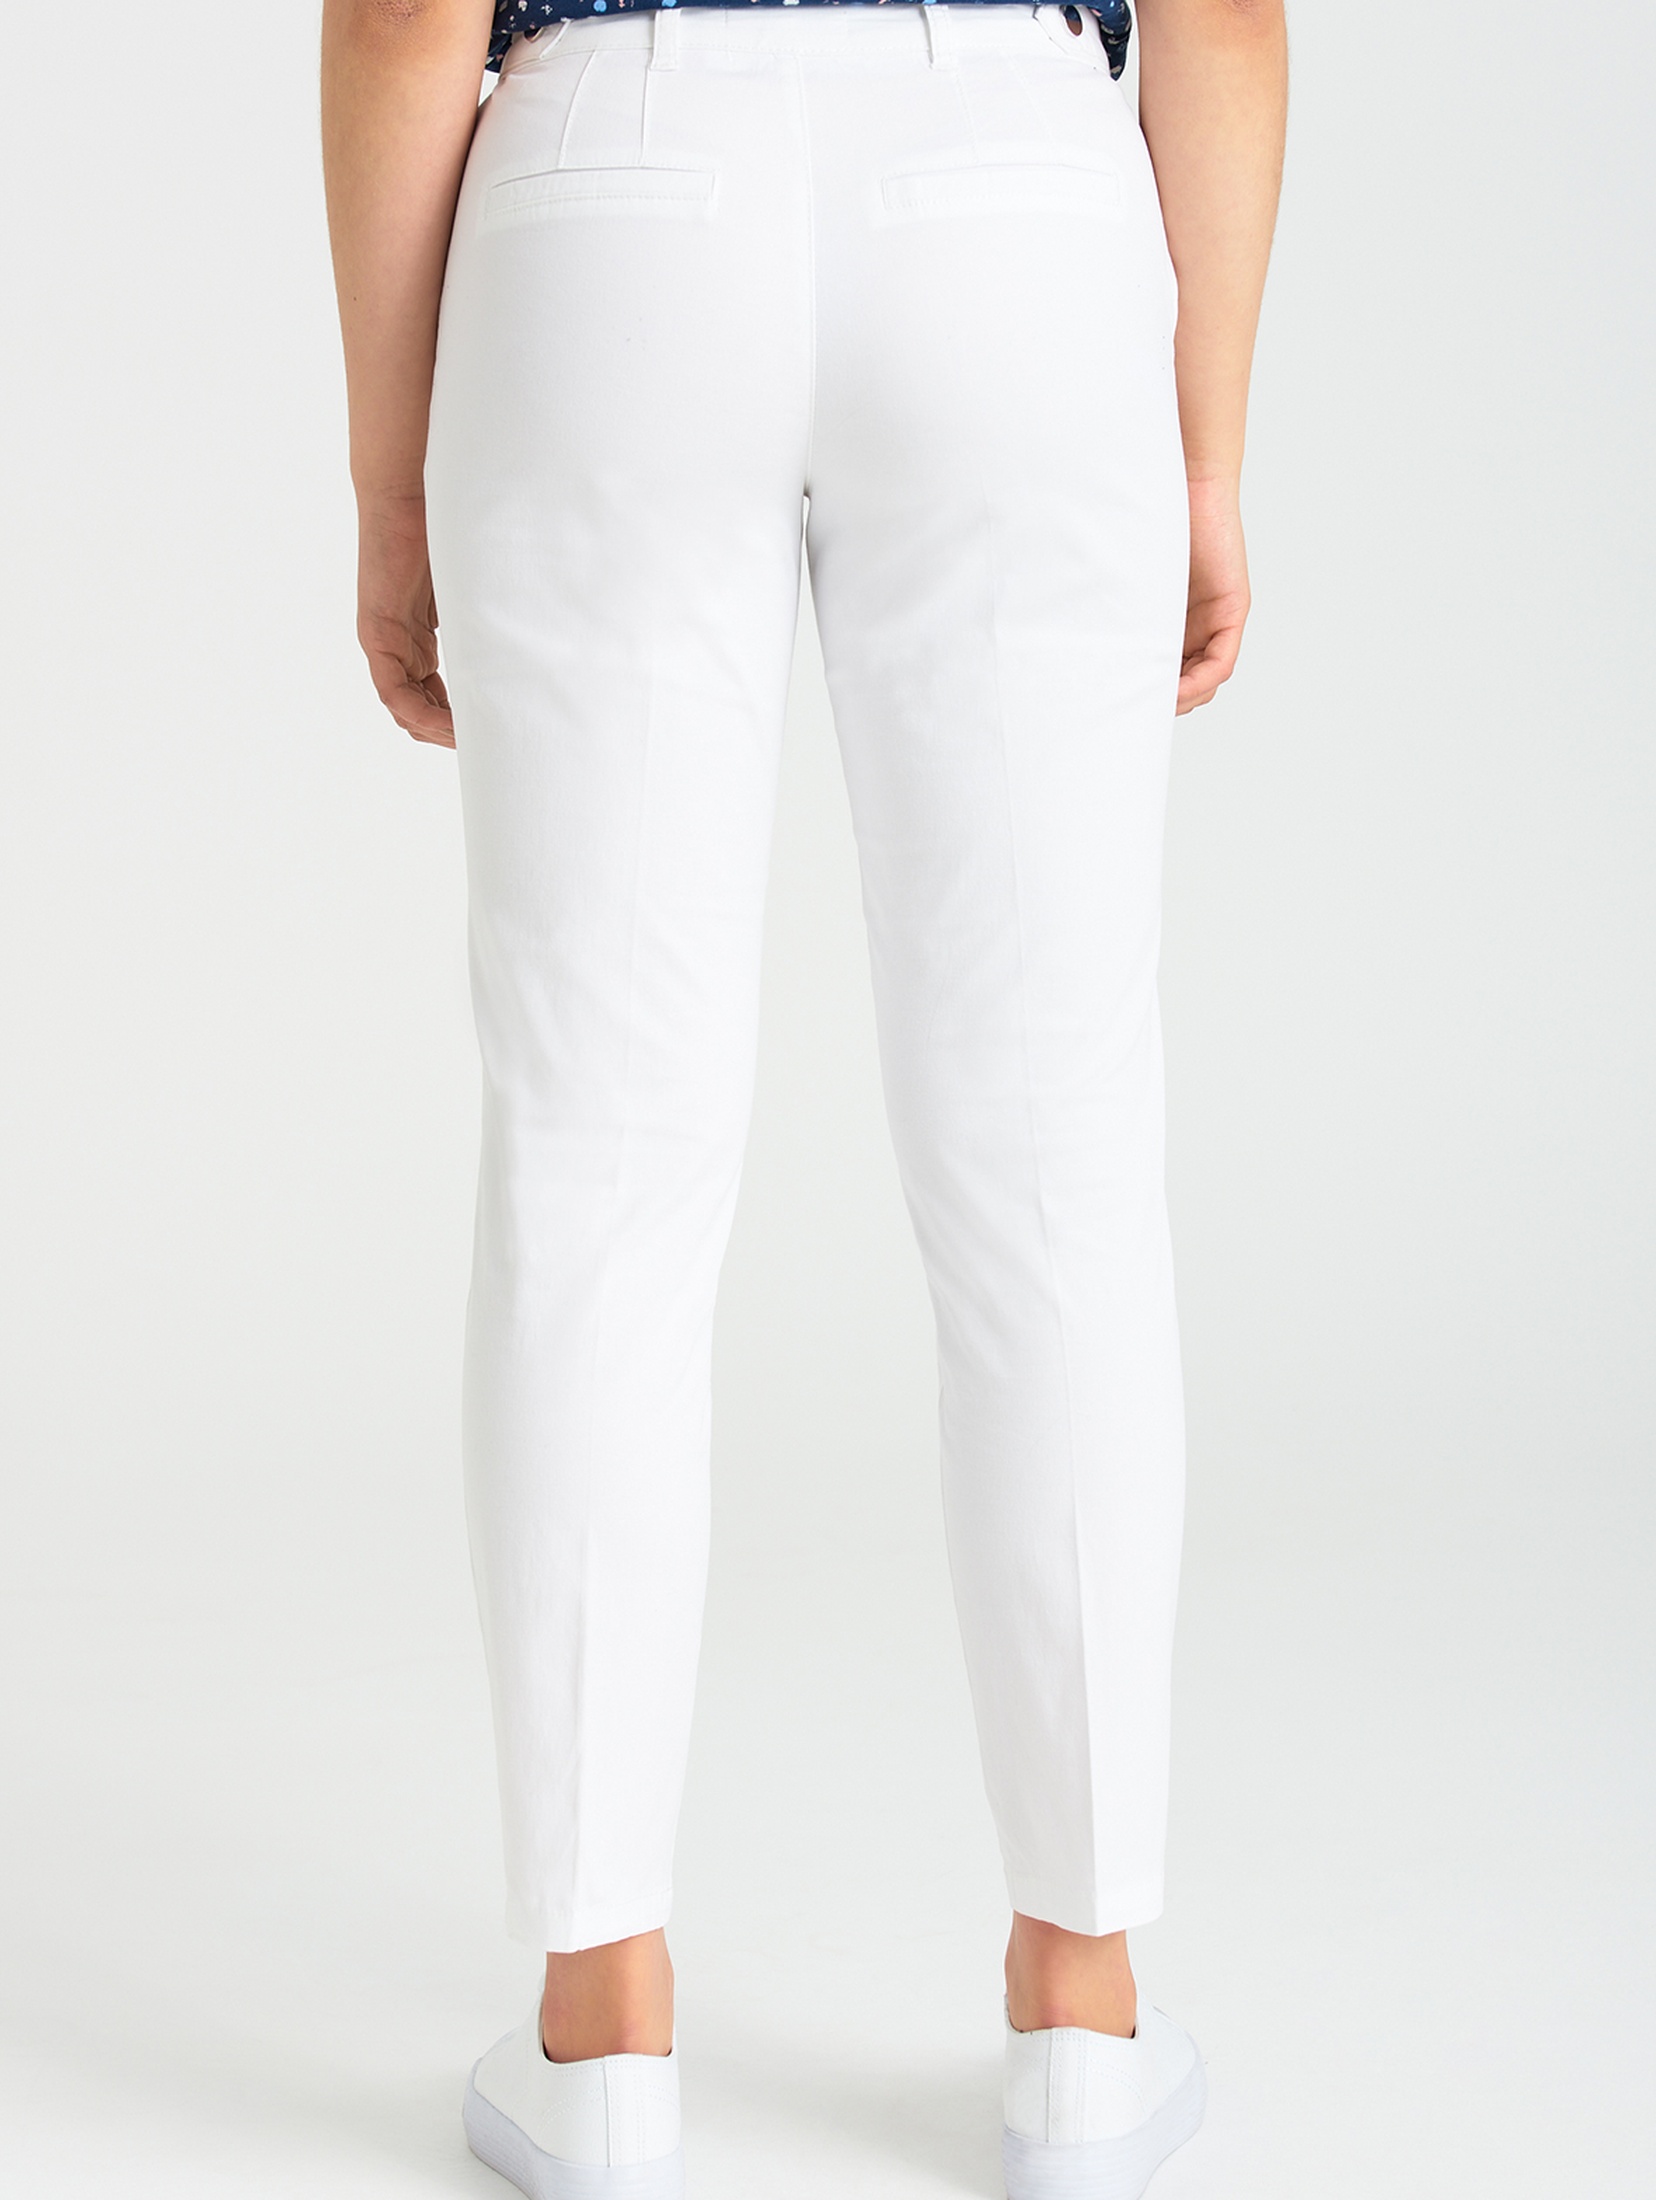 Spodnie klasyczne damskie białe